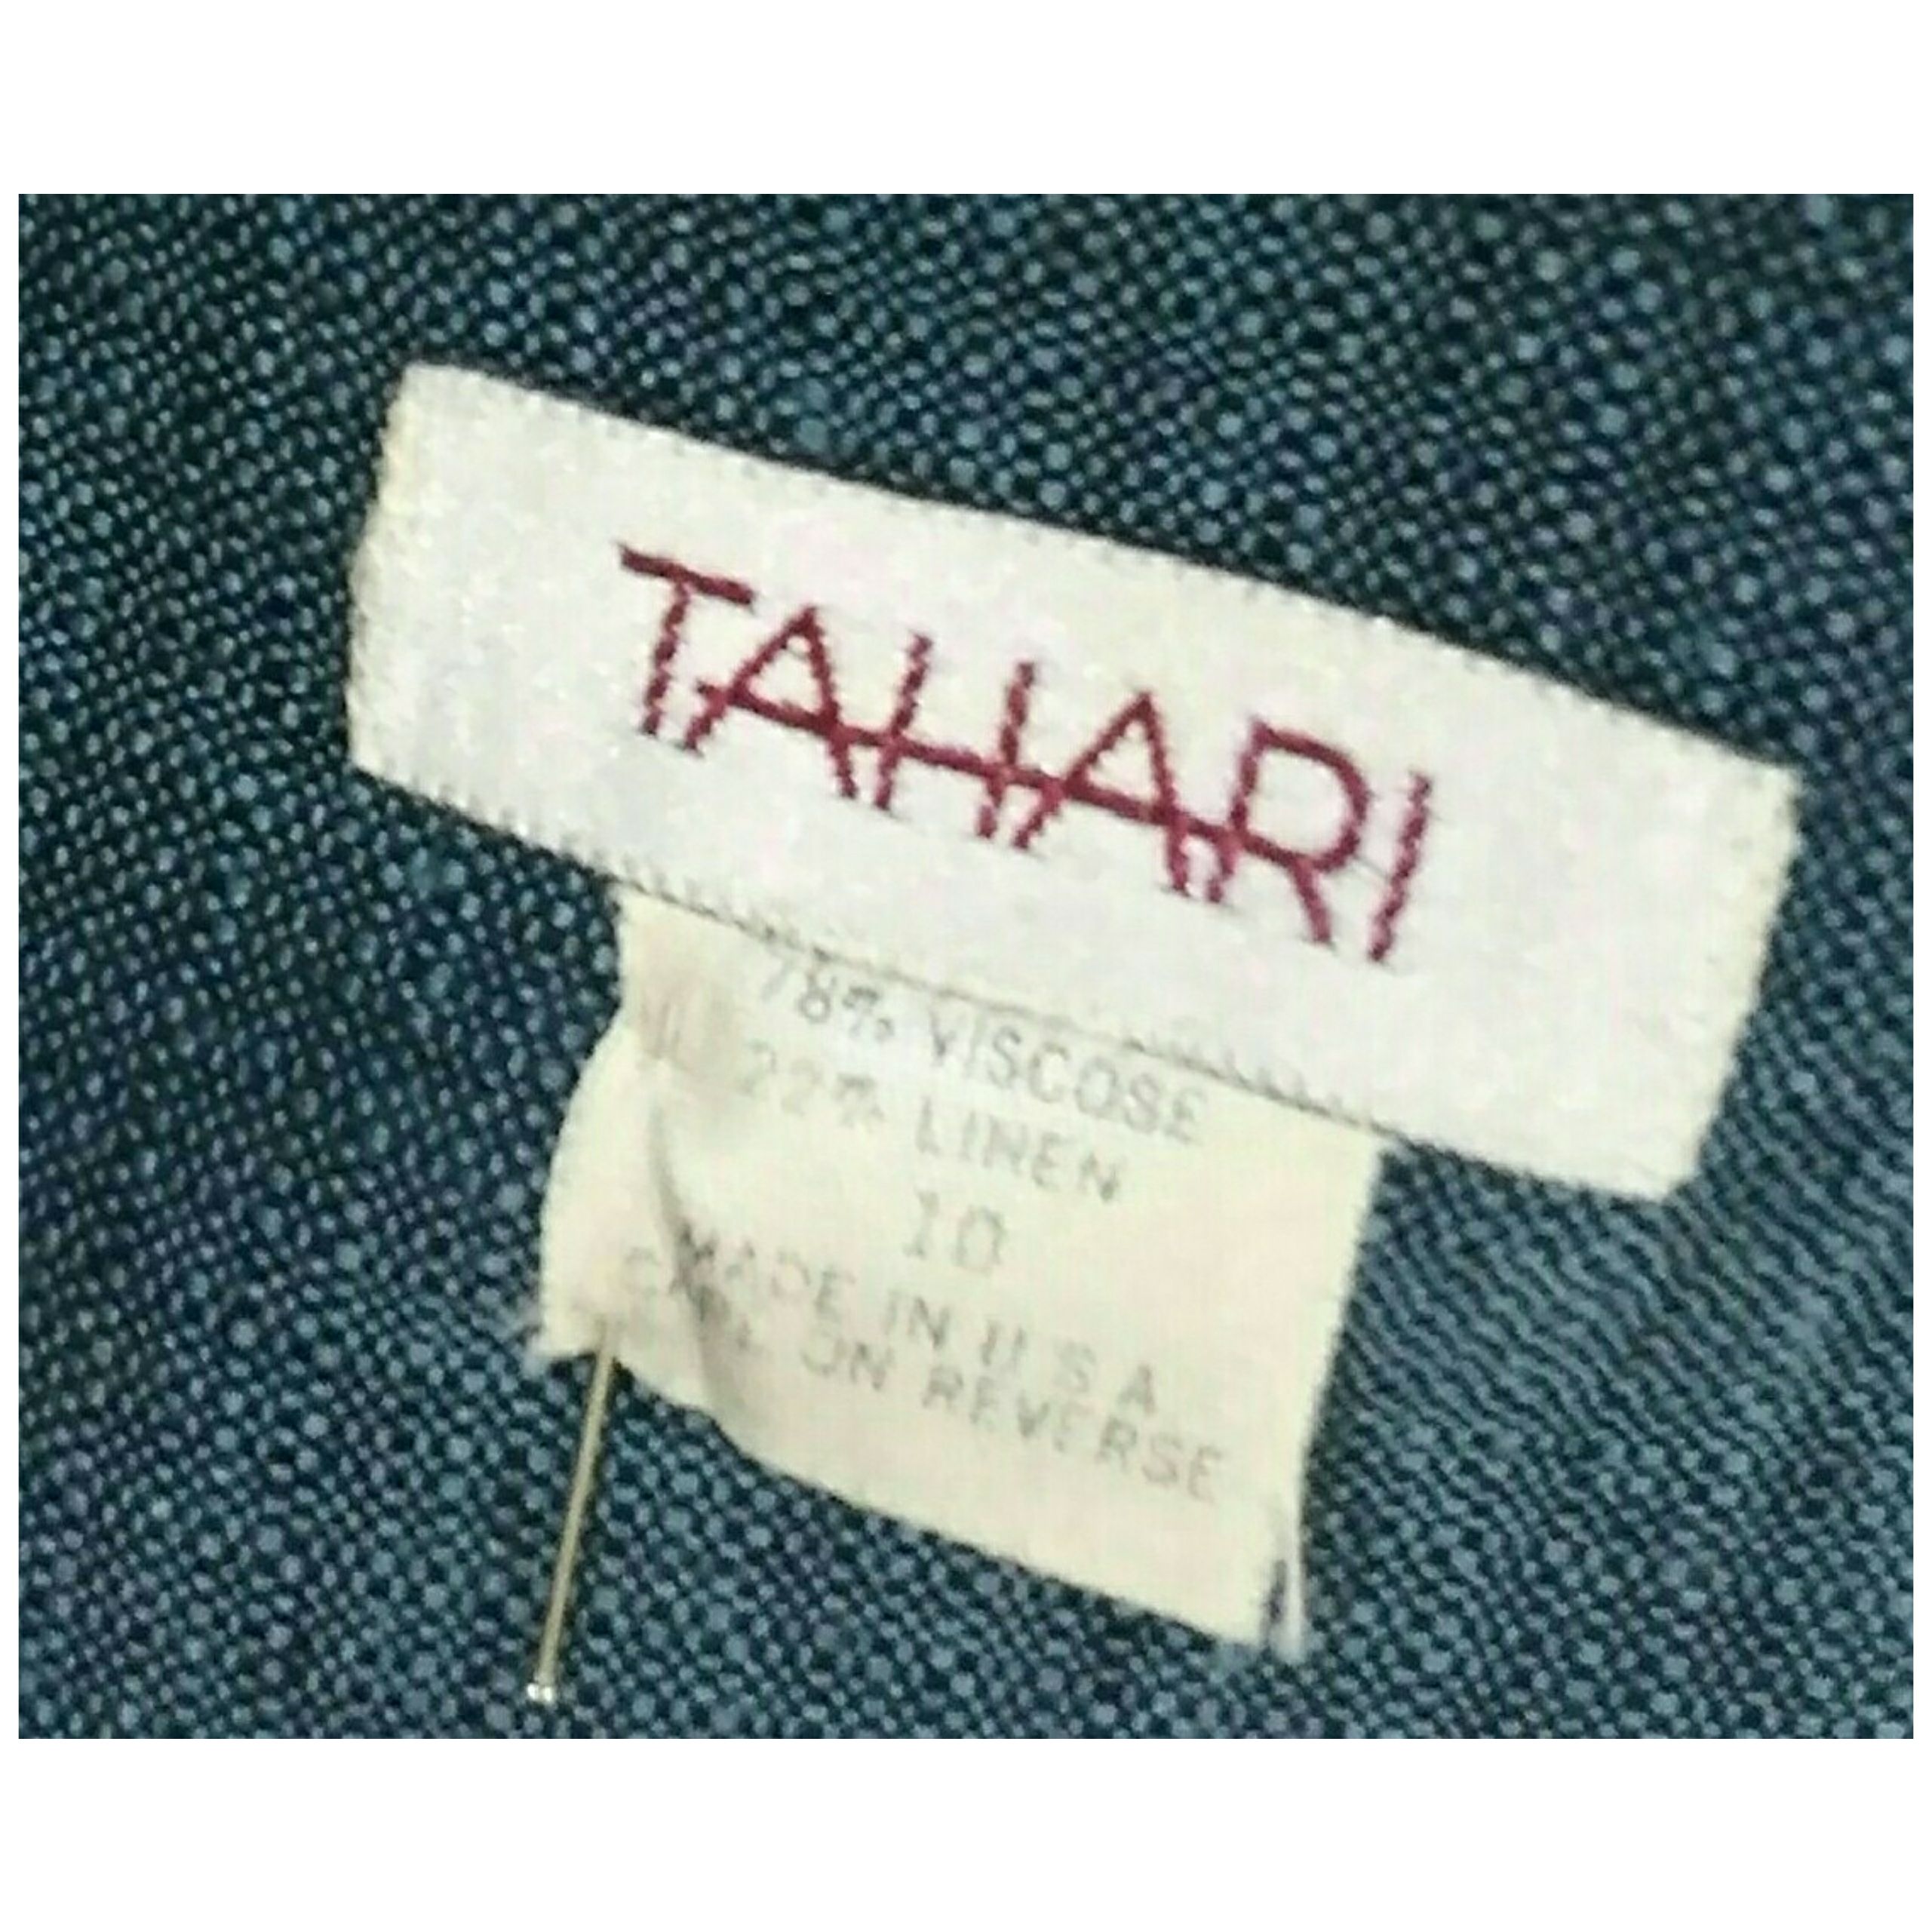 Vintage 1980’s TAHARI Accordion Pleated Skirt